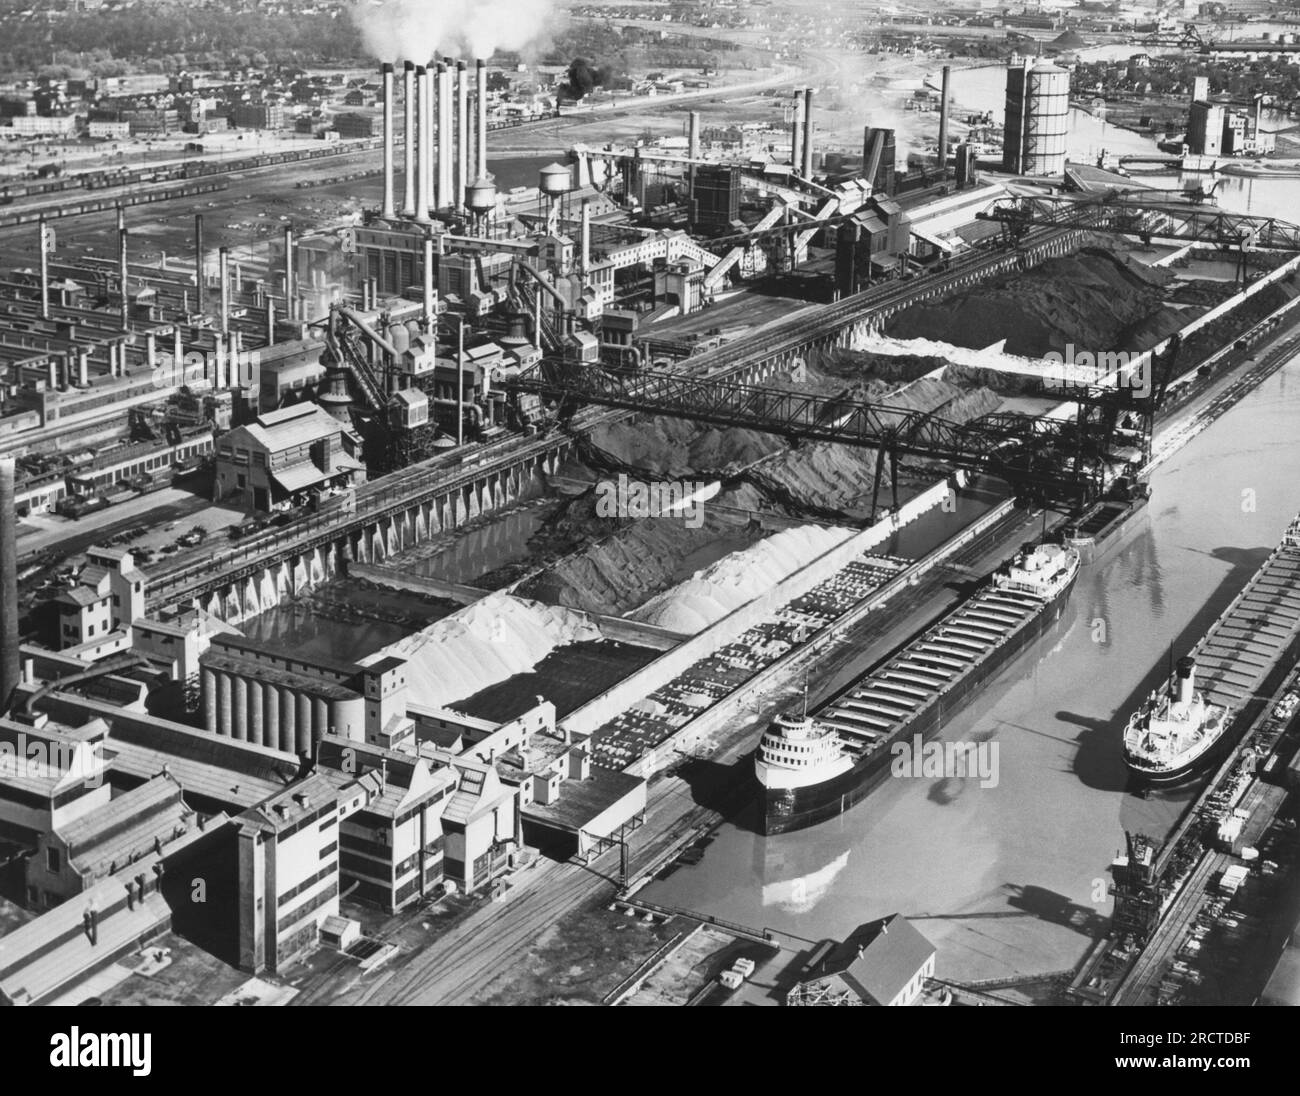 Dearborn, Michigan: Mai 1947, Werk River Rouge der Ford Motor Company, in dem im Hintergrund Eisenerz, Kohle und Kalkstein zur Versorgung der Hochöfen, der Gießerei und des Kraftwerks gelagert werden. Zwei Eisenerzträger befinden sich am Dock rechts. Stockfoto